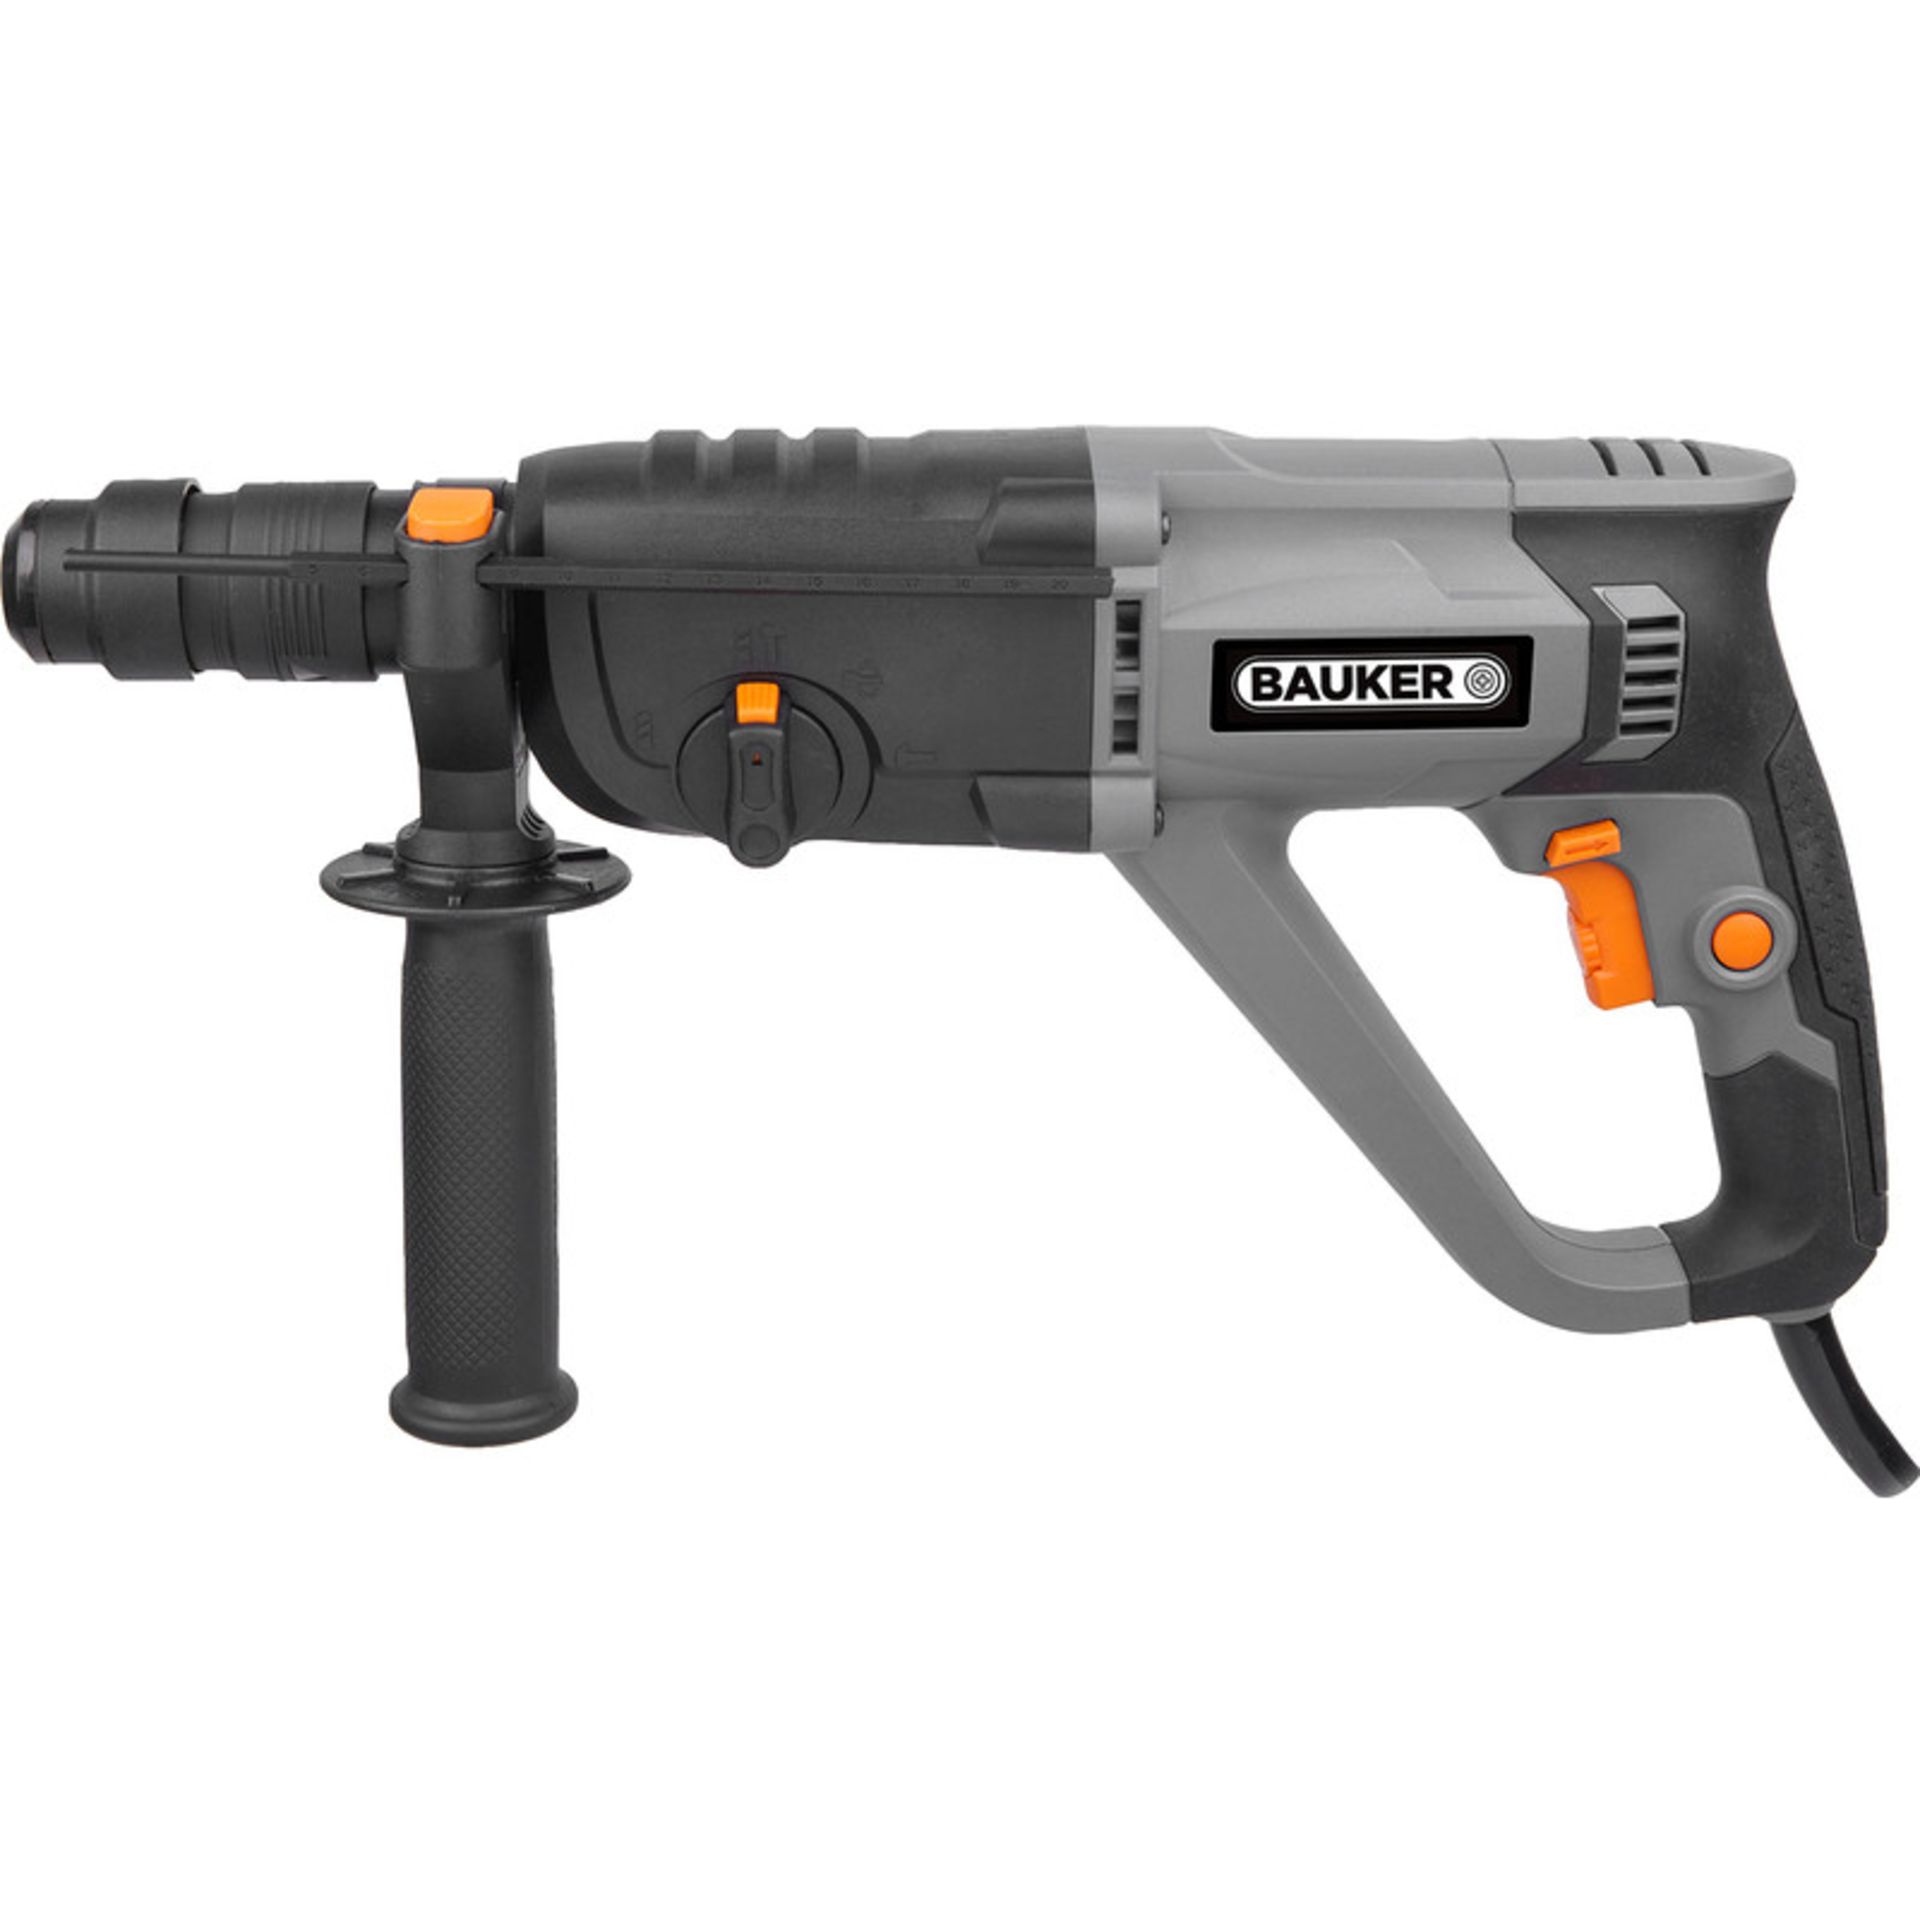 Bauker 1100W 3 Function SDS+ Hammer Drill 240V. • 3 function: drill, hammer drill, chisel • No